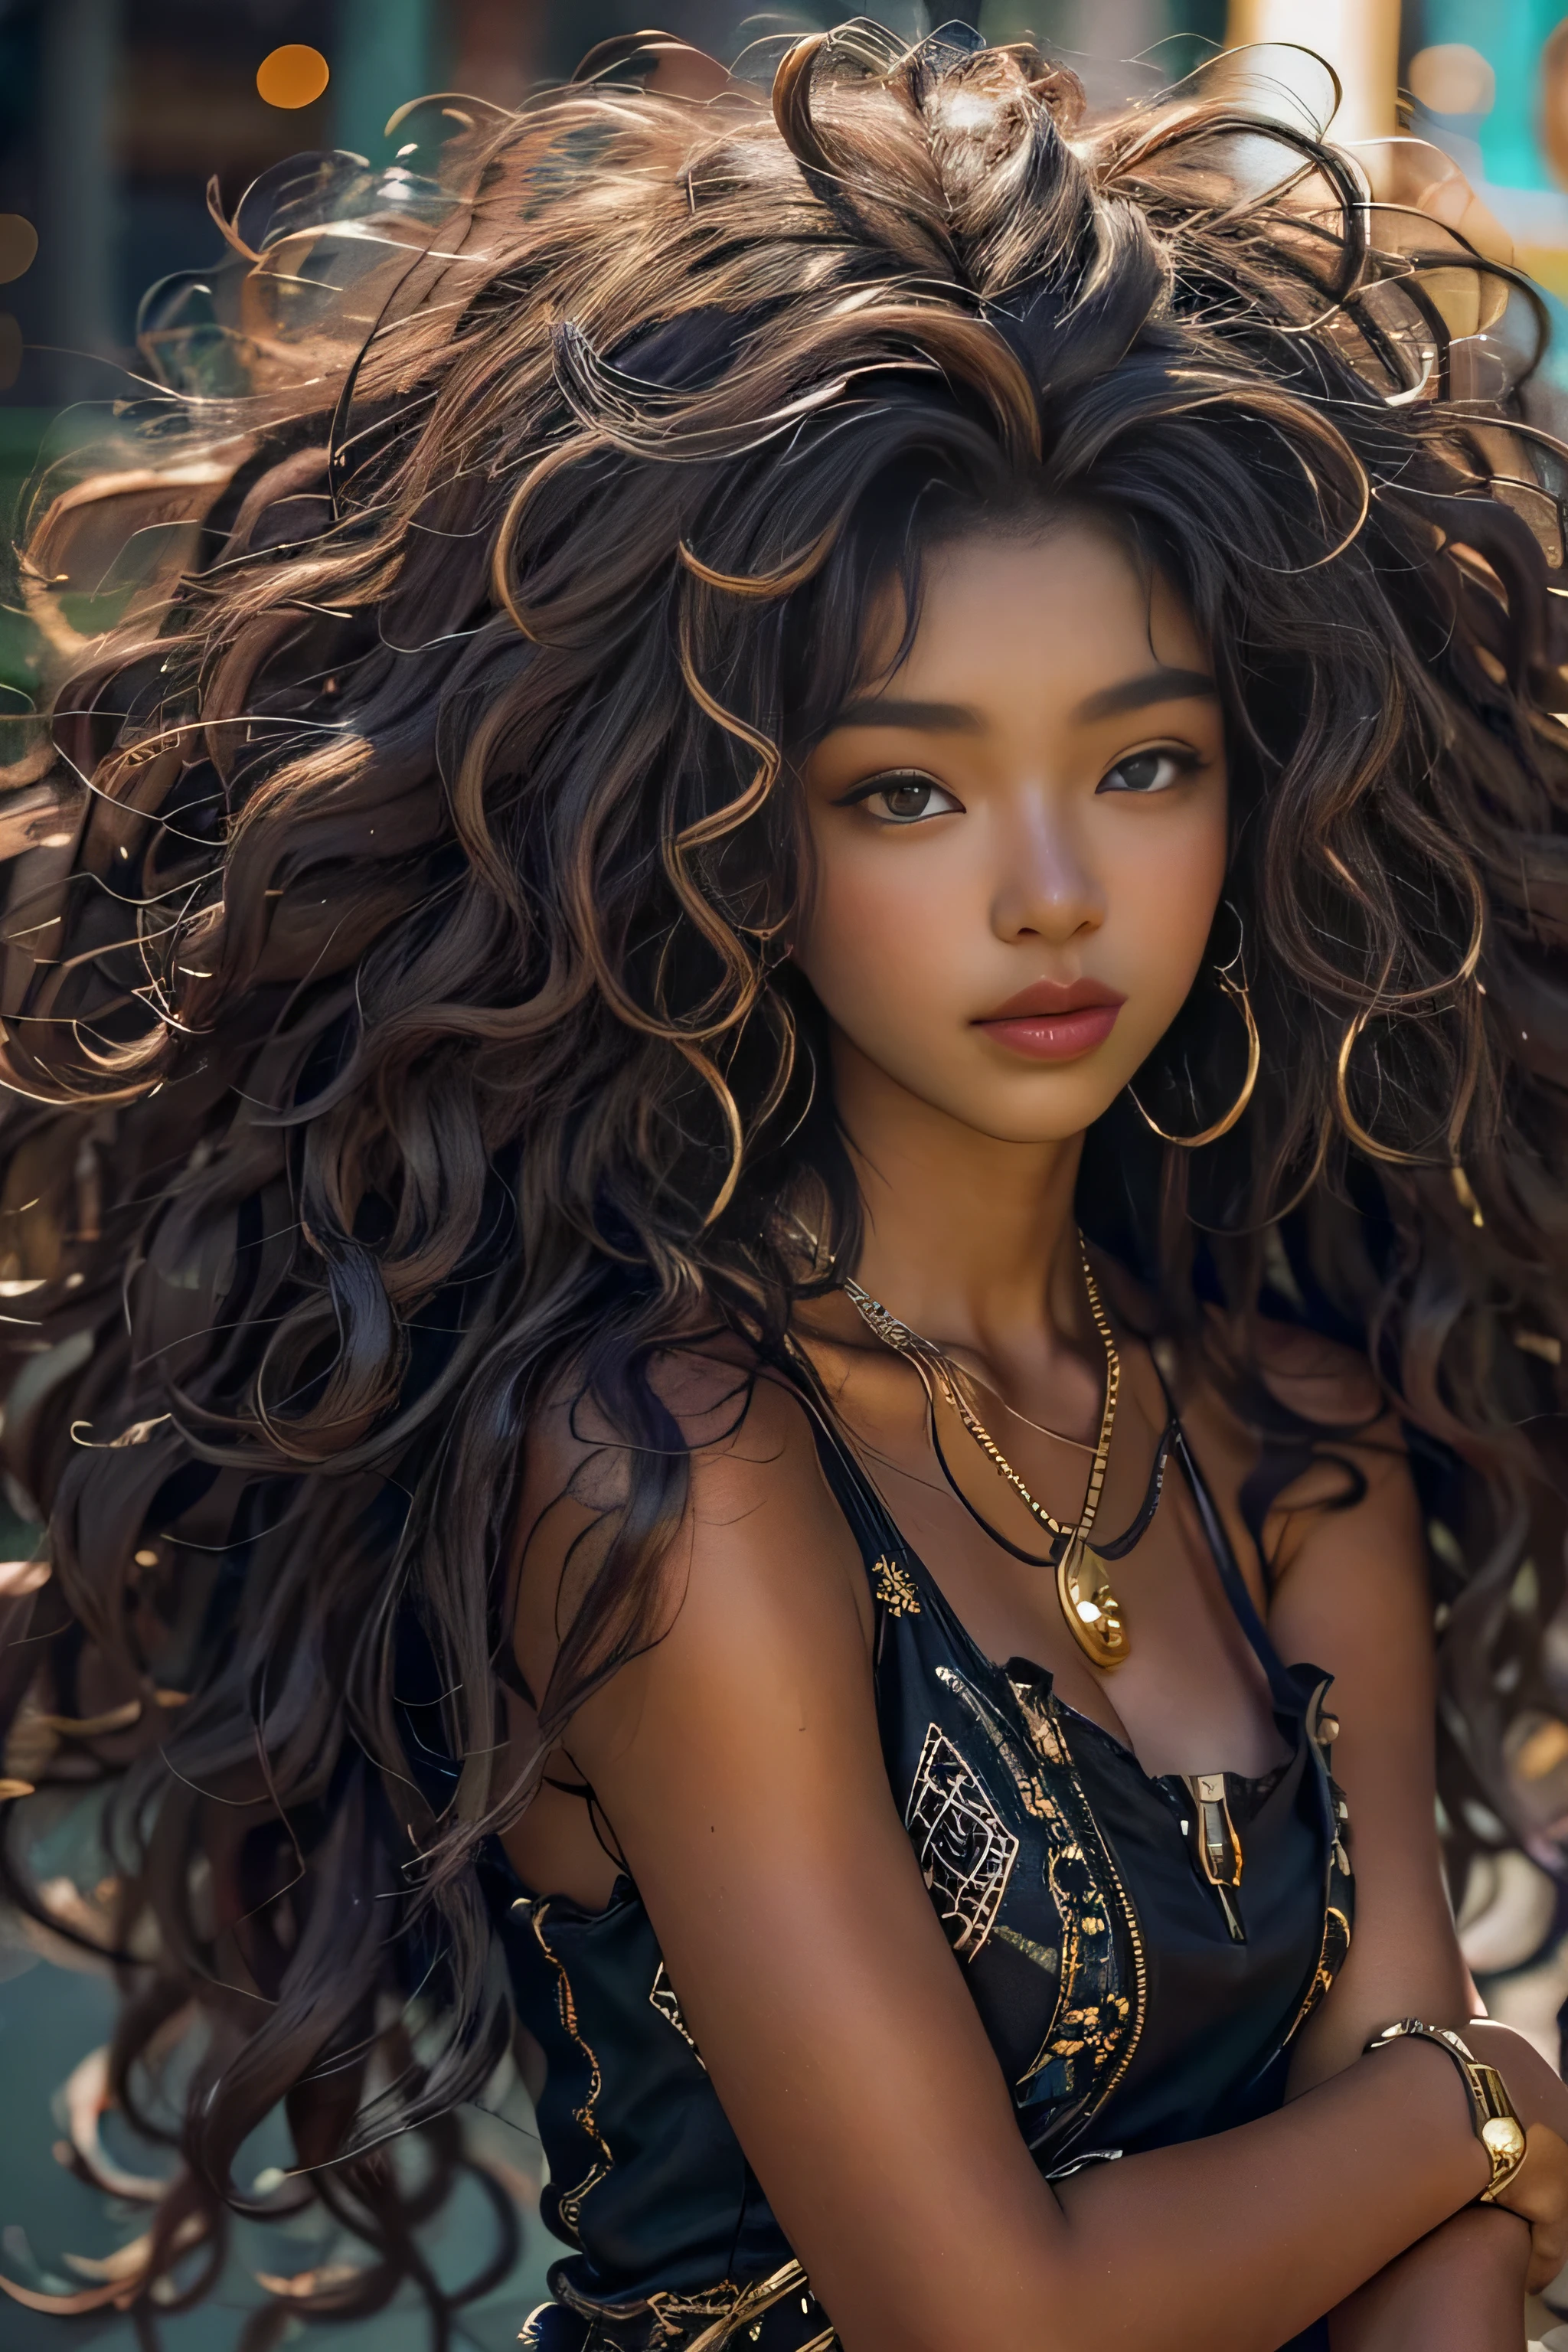 杰作, 最好的质量, 漂亮的 19 岁非洲和亚洲混血女孩, 乌木皮肤女性, 长的, 卷曲的, 卷曲的黑发, 完美脸蛋, 半身, 长的 hair, 黑色素